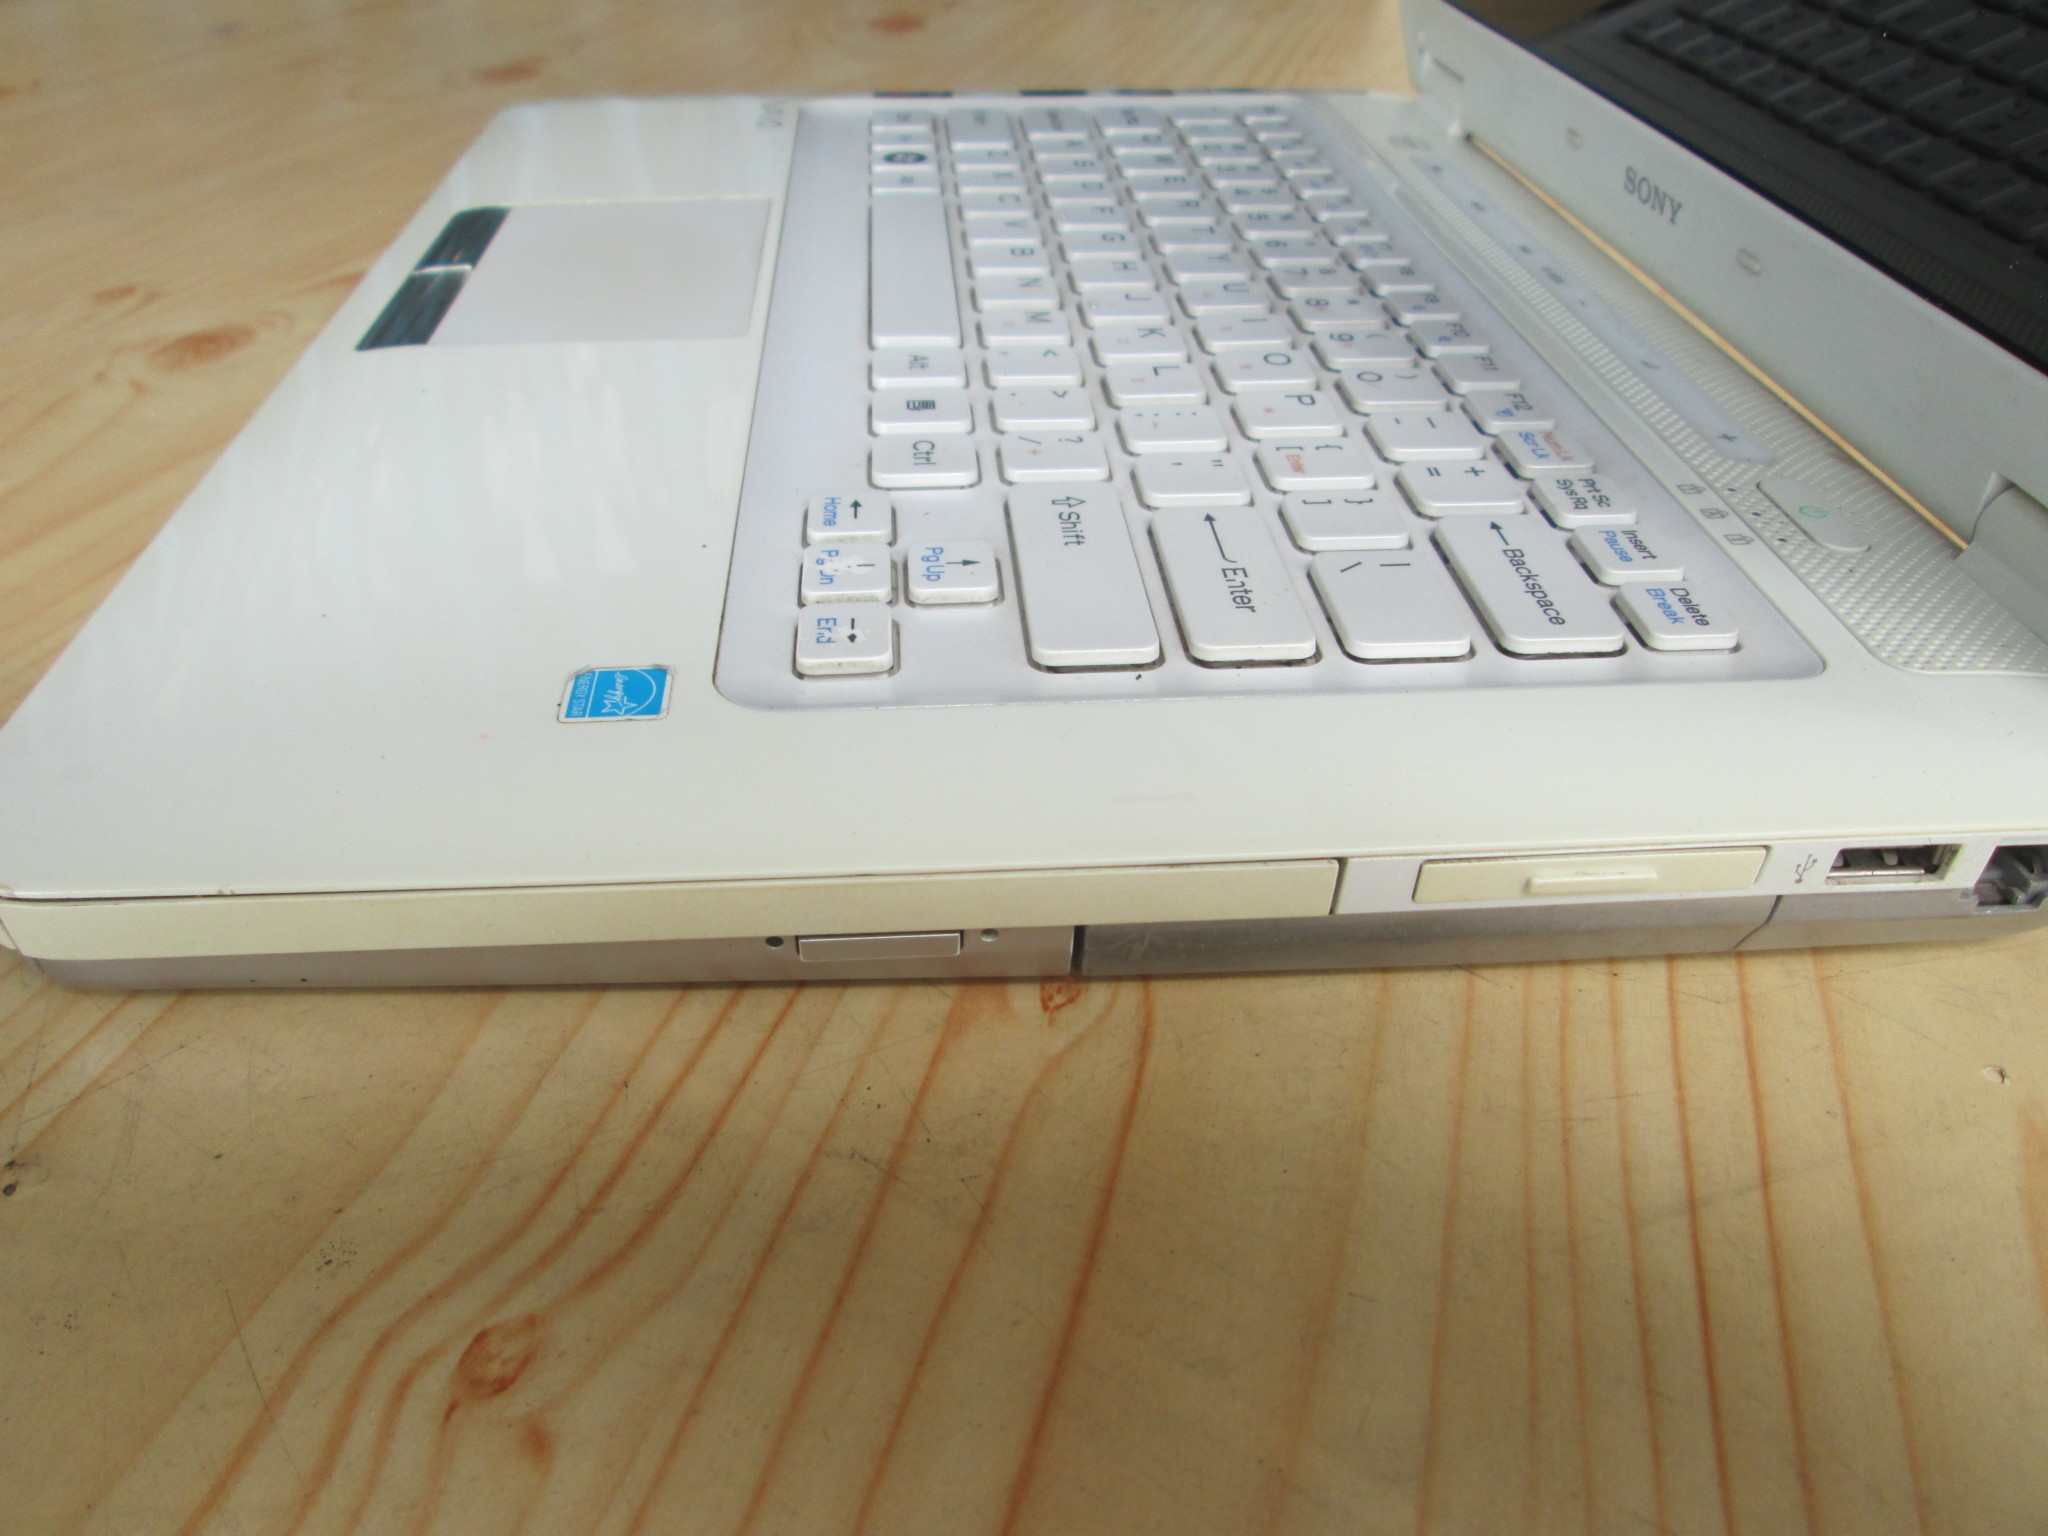 Bán laptop cũ sony vgn cs36gj giá rẻ tại hà nội